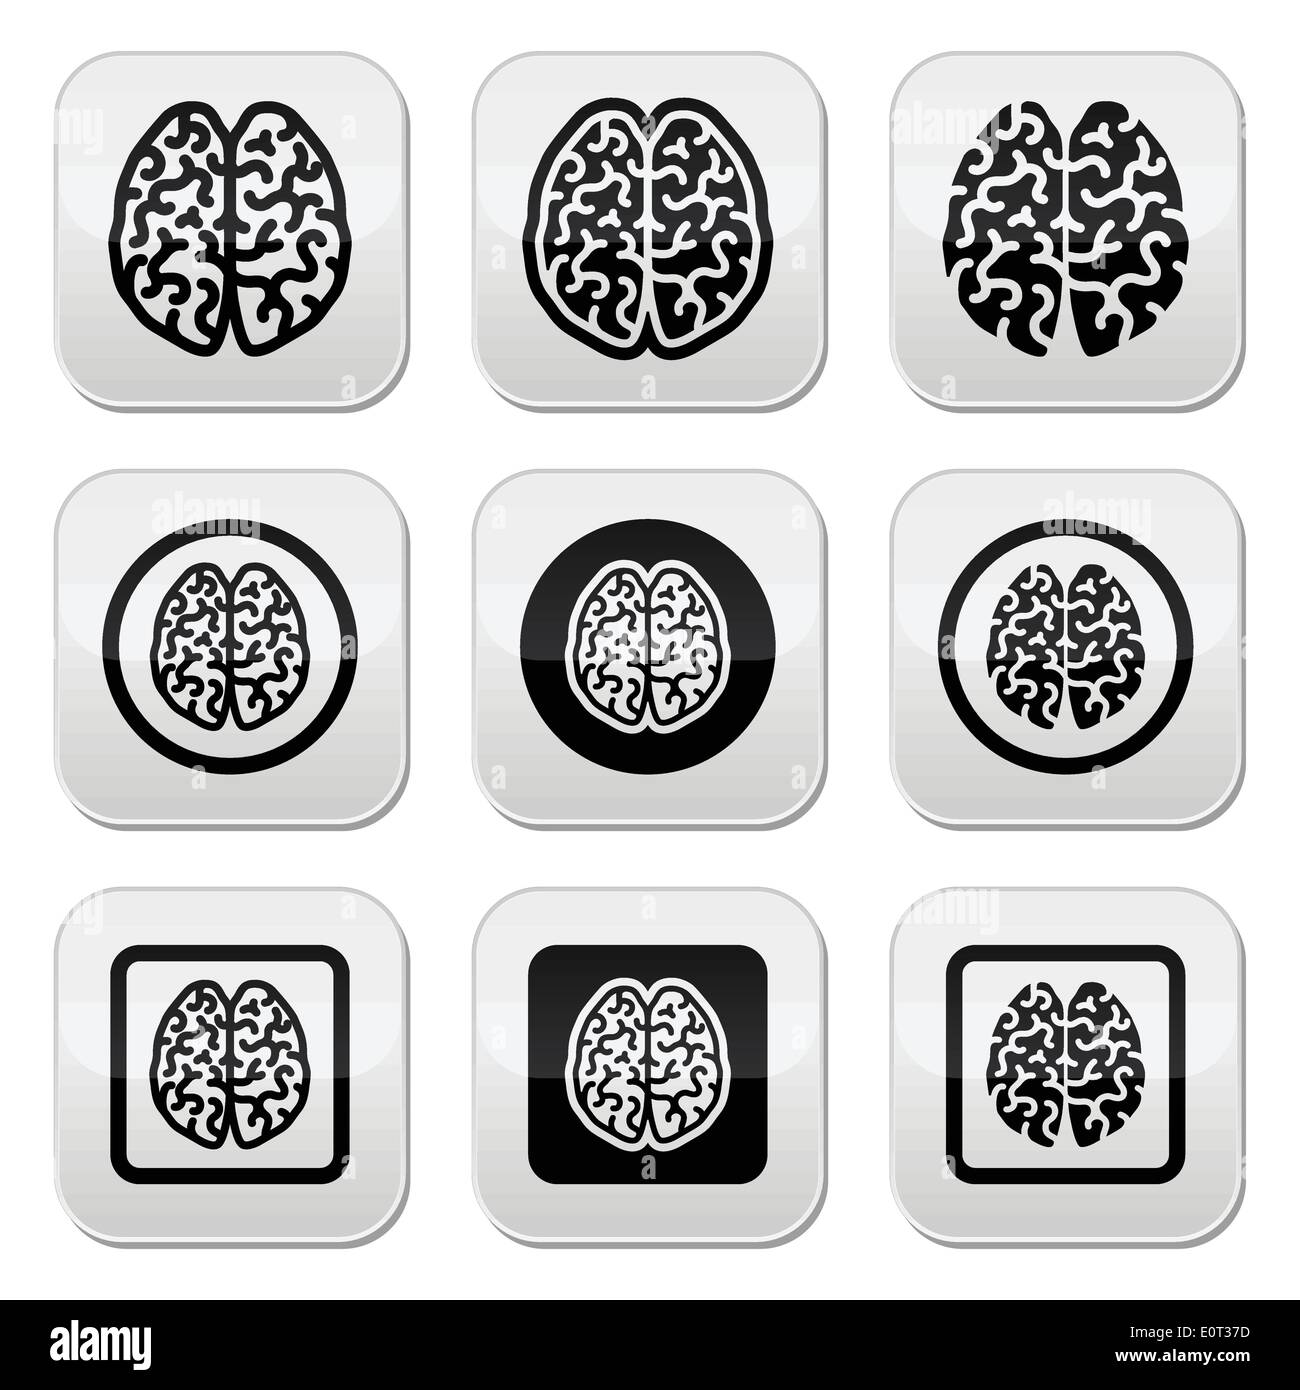 Menschlichen Gehirns Icons set - Intelligenz, Kreativität-Konzept Stock Vektor